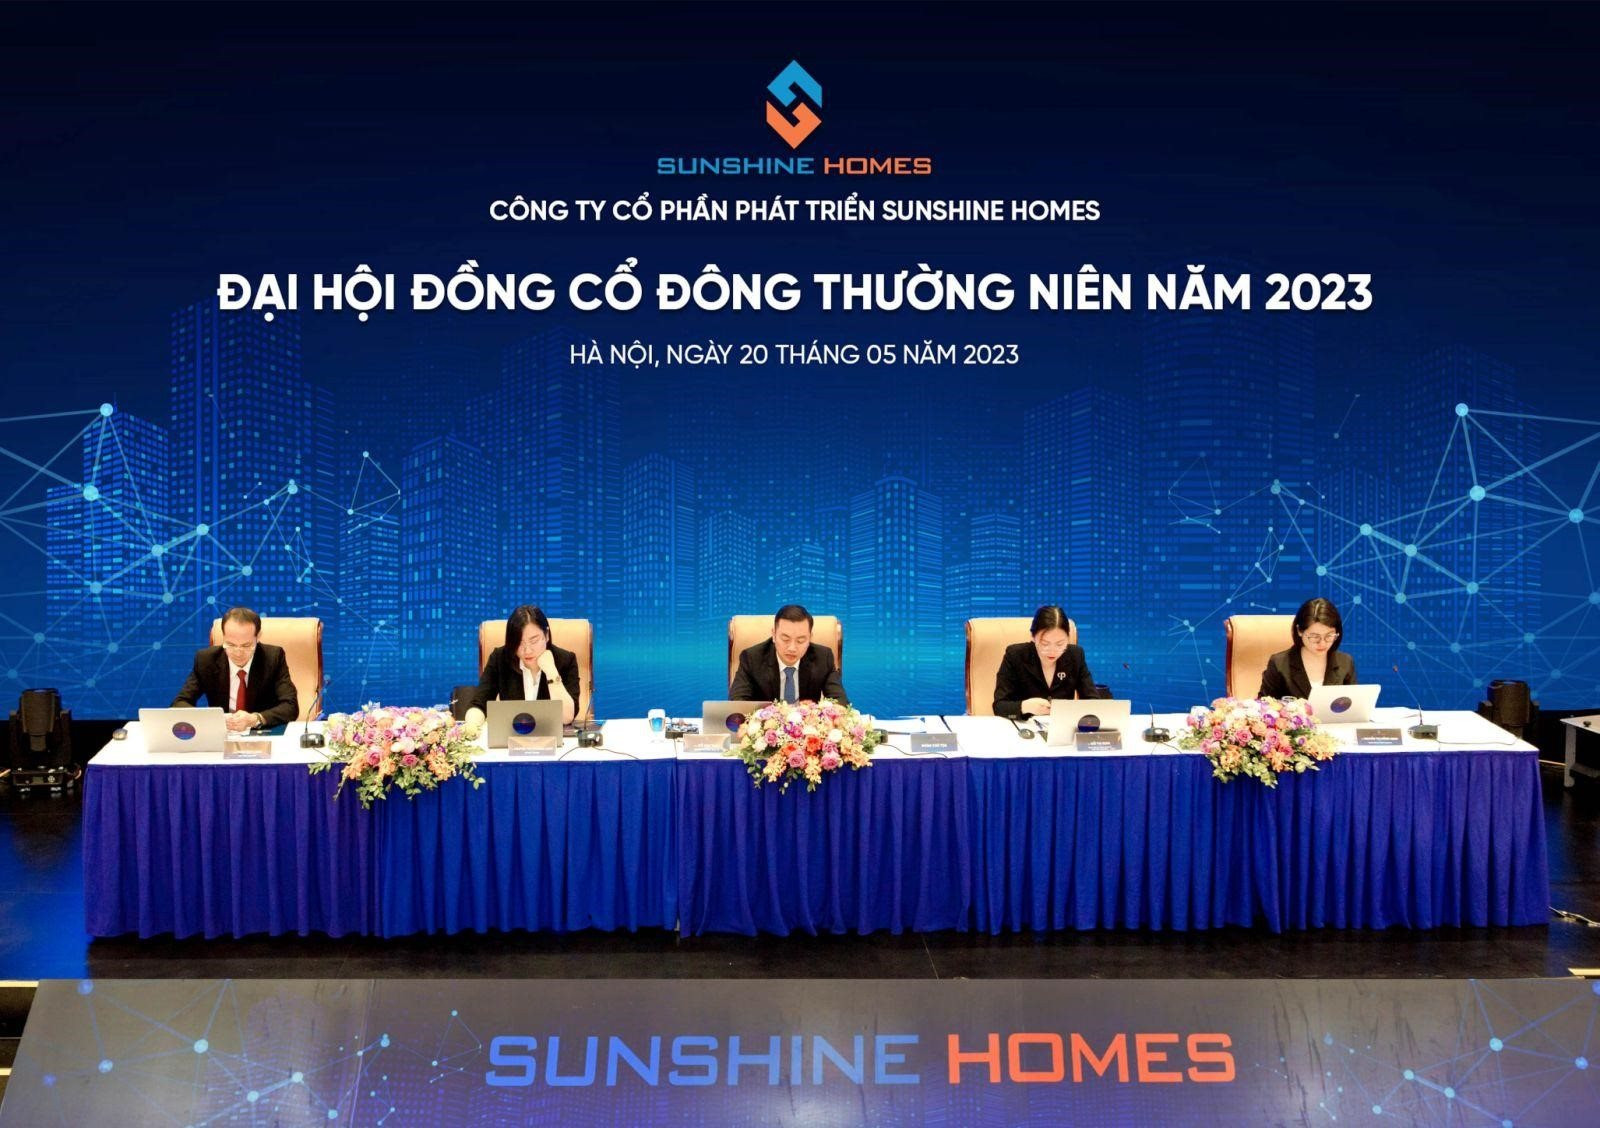 ĐHĐCĐ Sunshine Homes: Mục tiêu tăng trưởng ổn định, tập trung phát triển các dự án lớn tại Hà Nội và TP.HCM